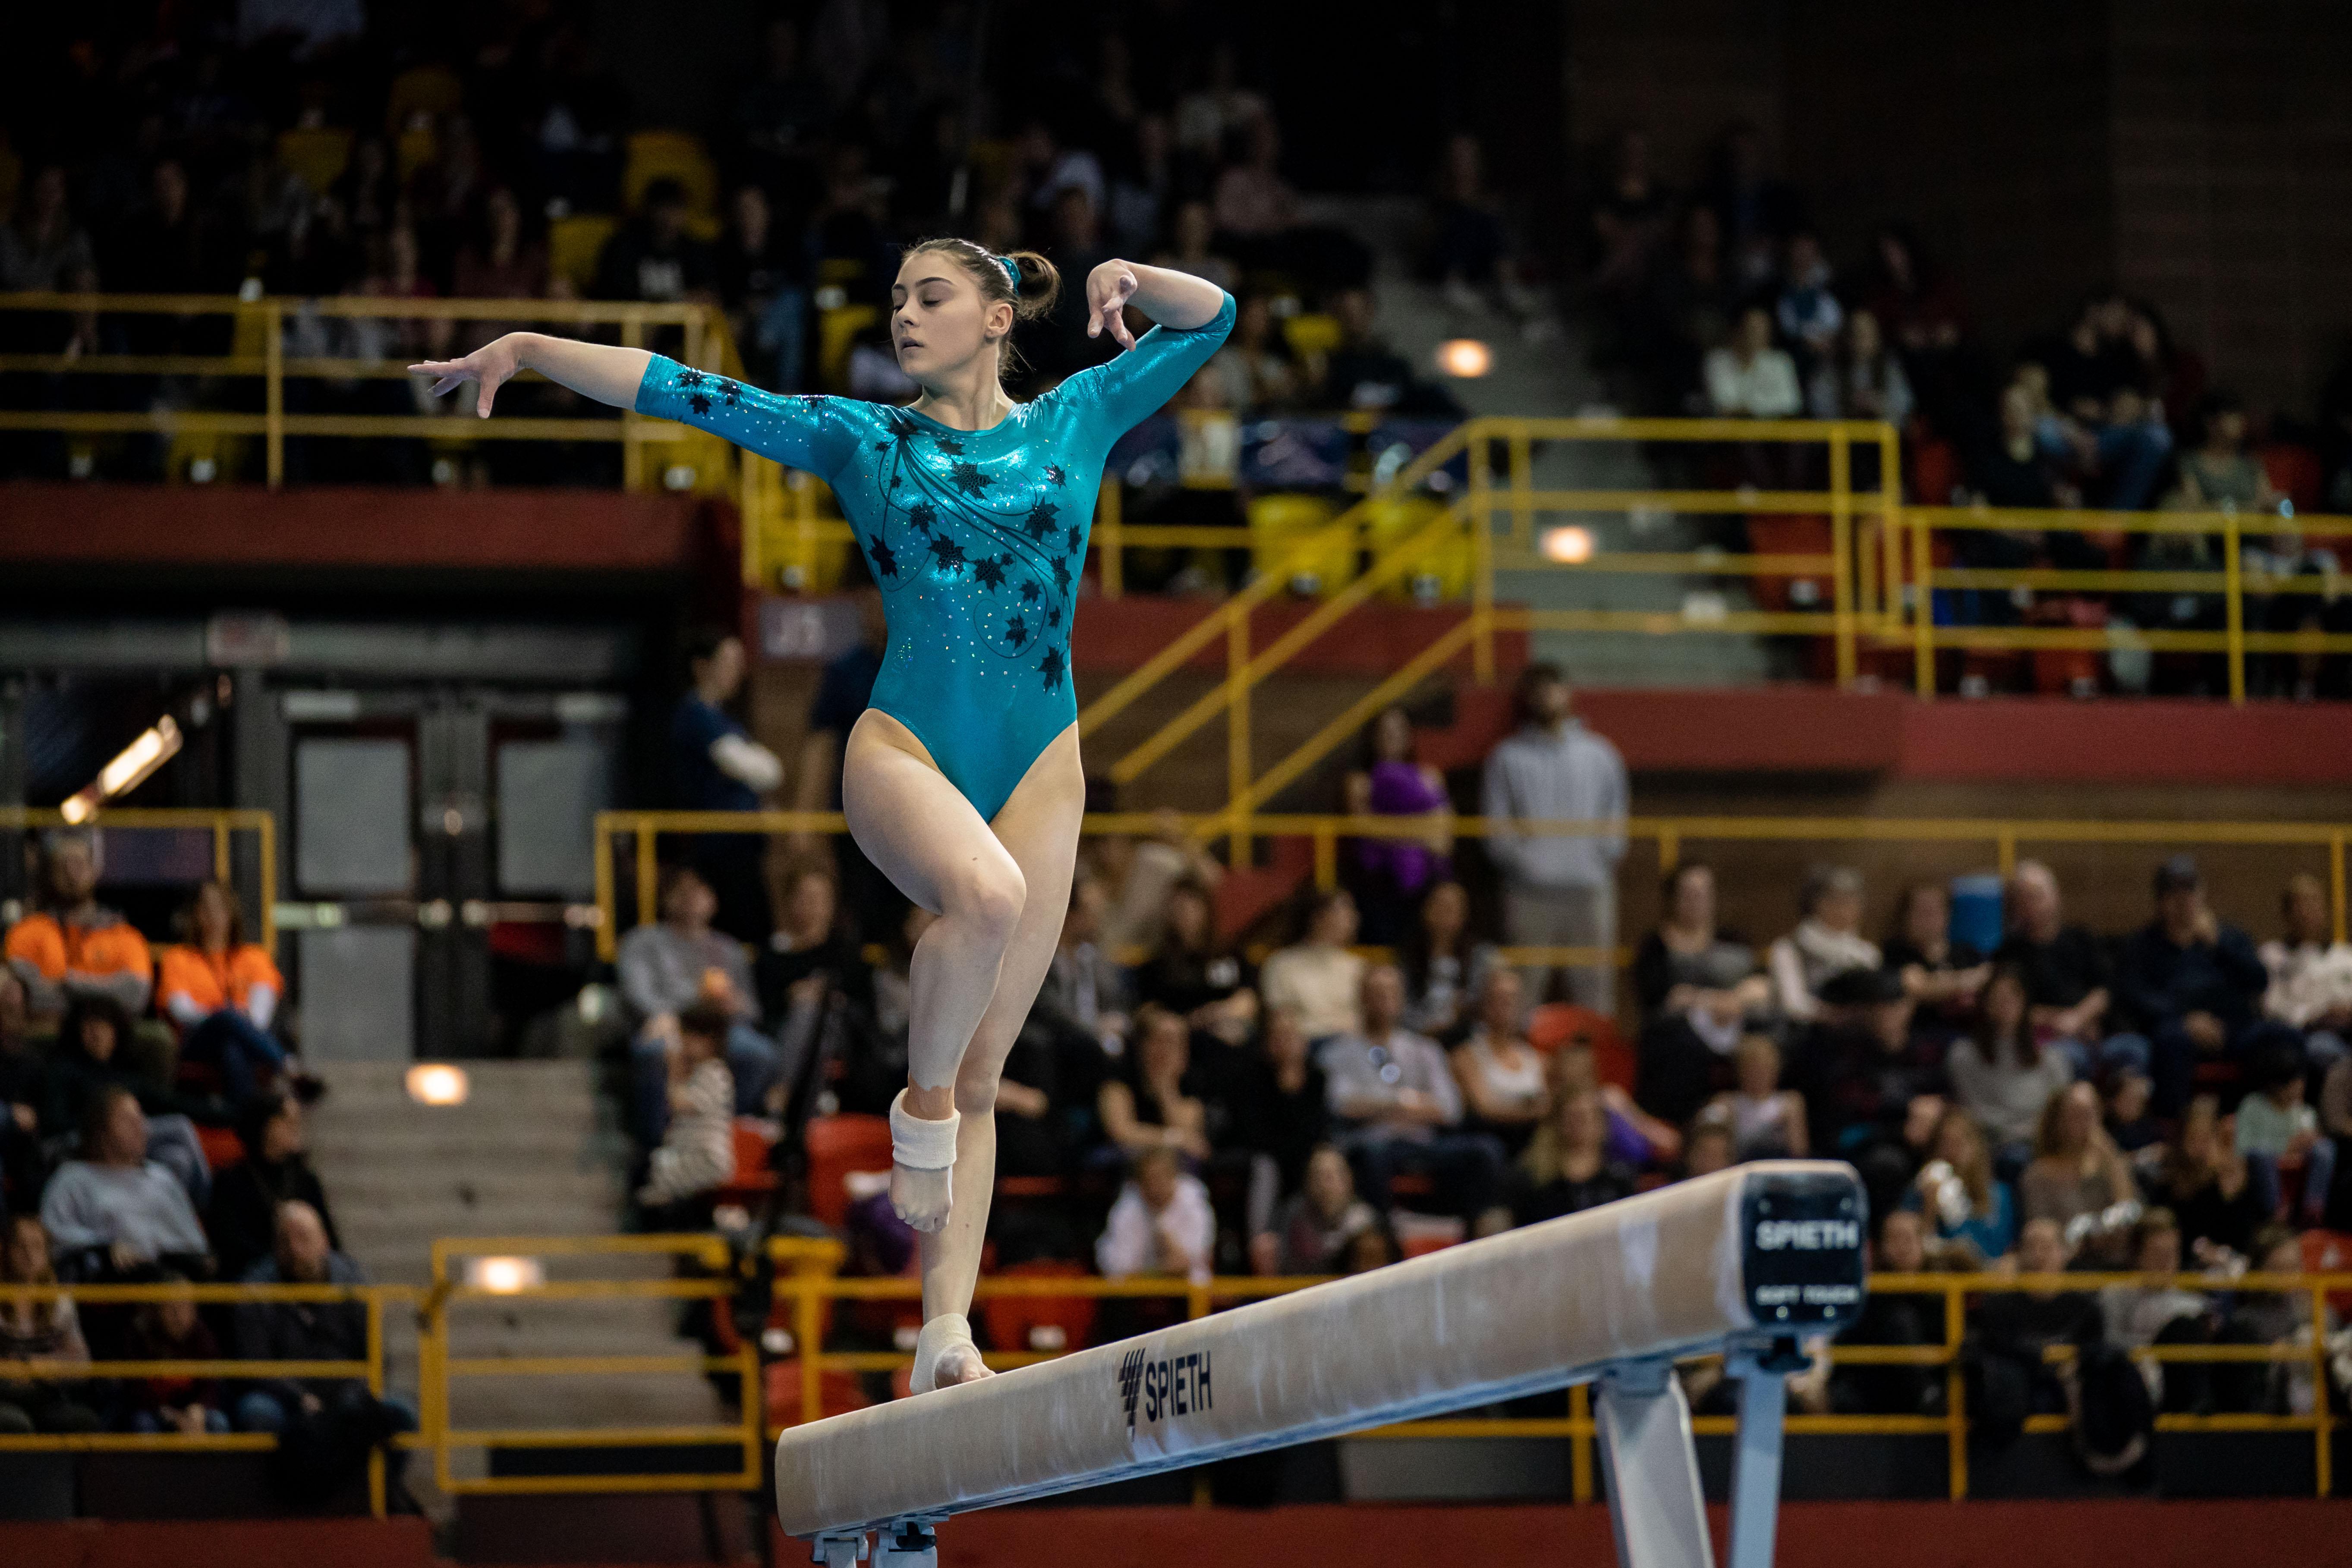 Gymnastique : le bronze pour Rose Woo aux barres asymétriques